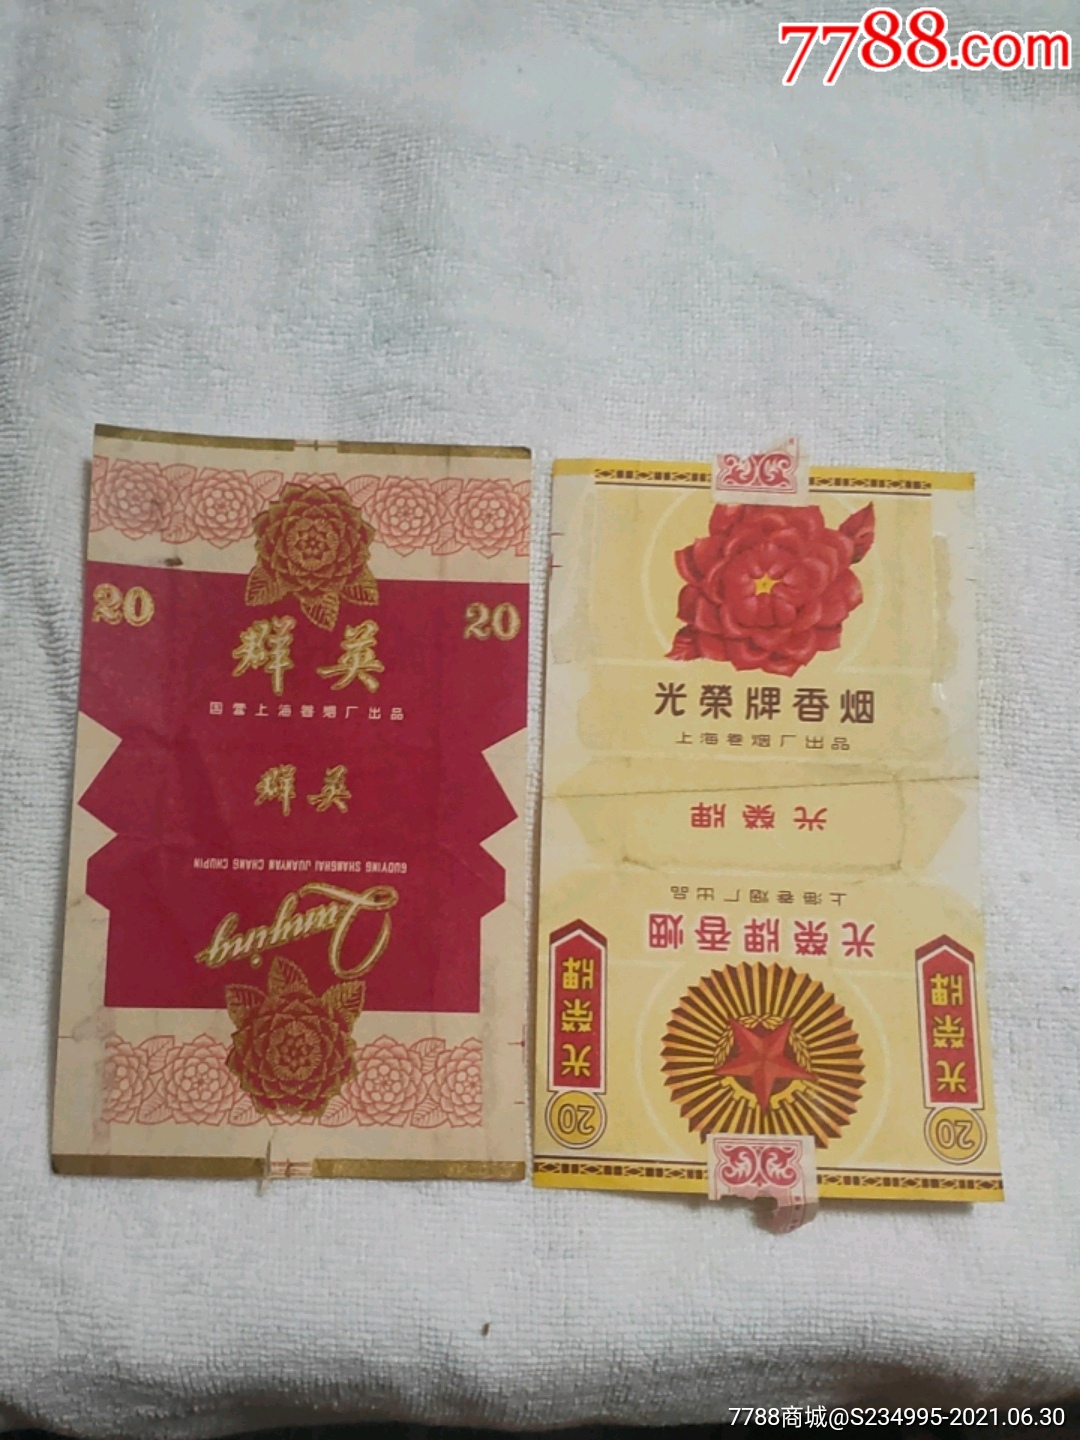 中华(70S)2(左侧英文少见)-中国上海卷烟厂-价格:20元-se94018307-烟标/烟盒-零售-7788收藏__收藏热线